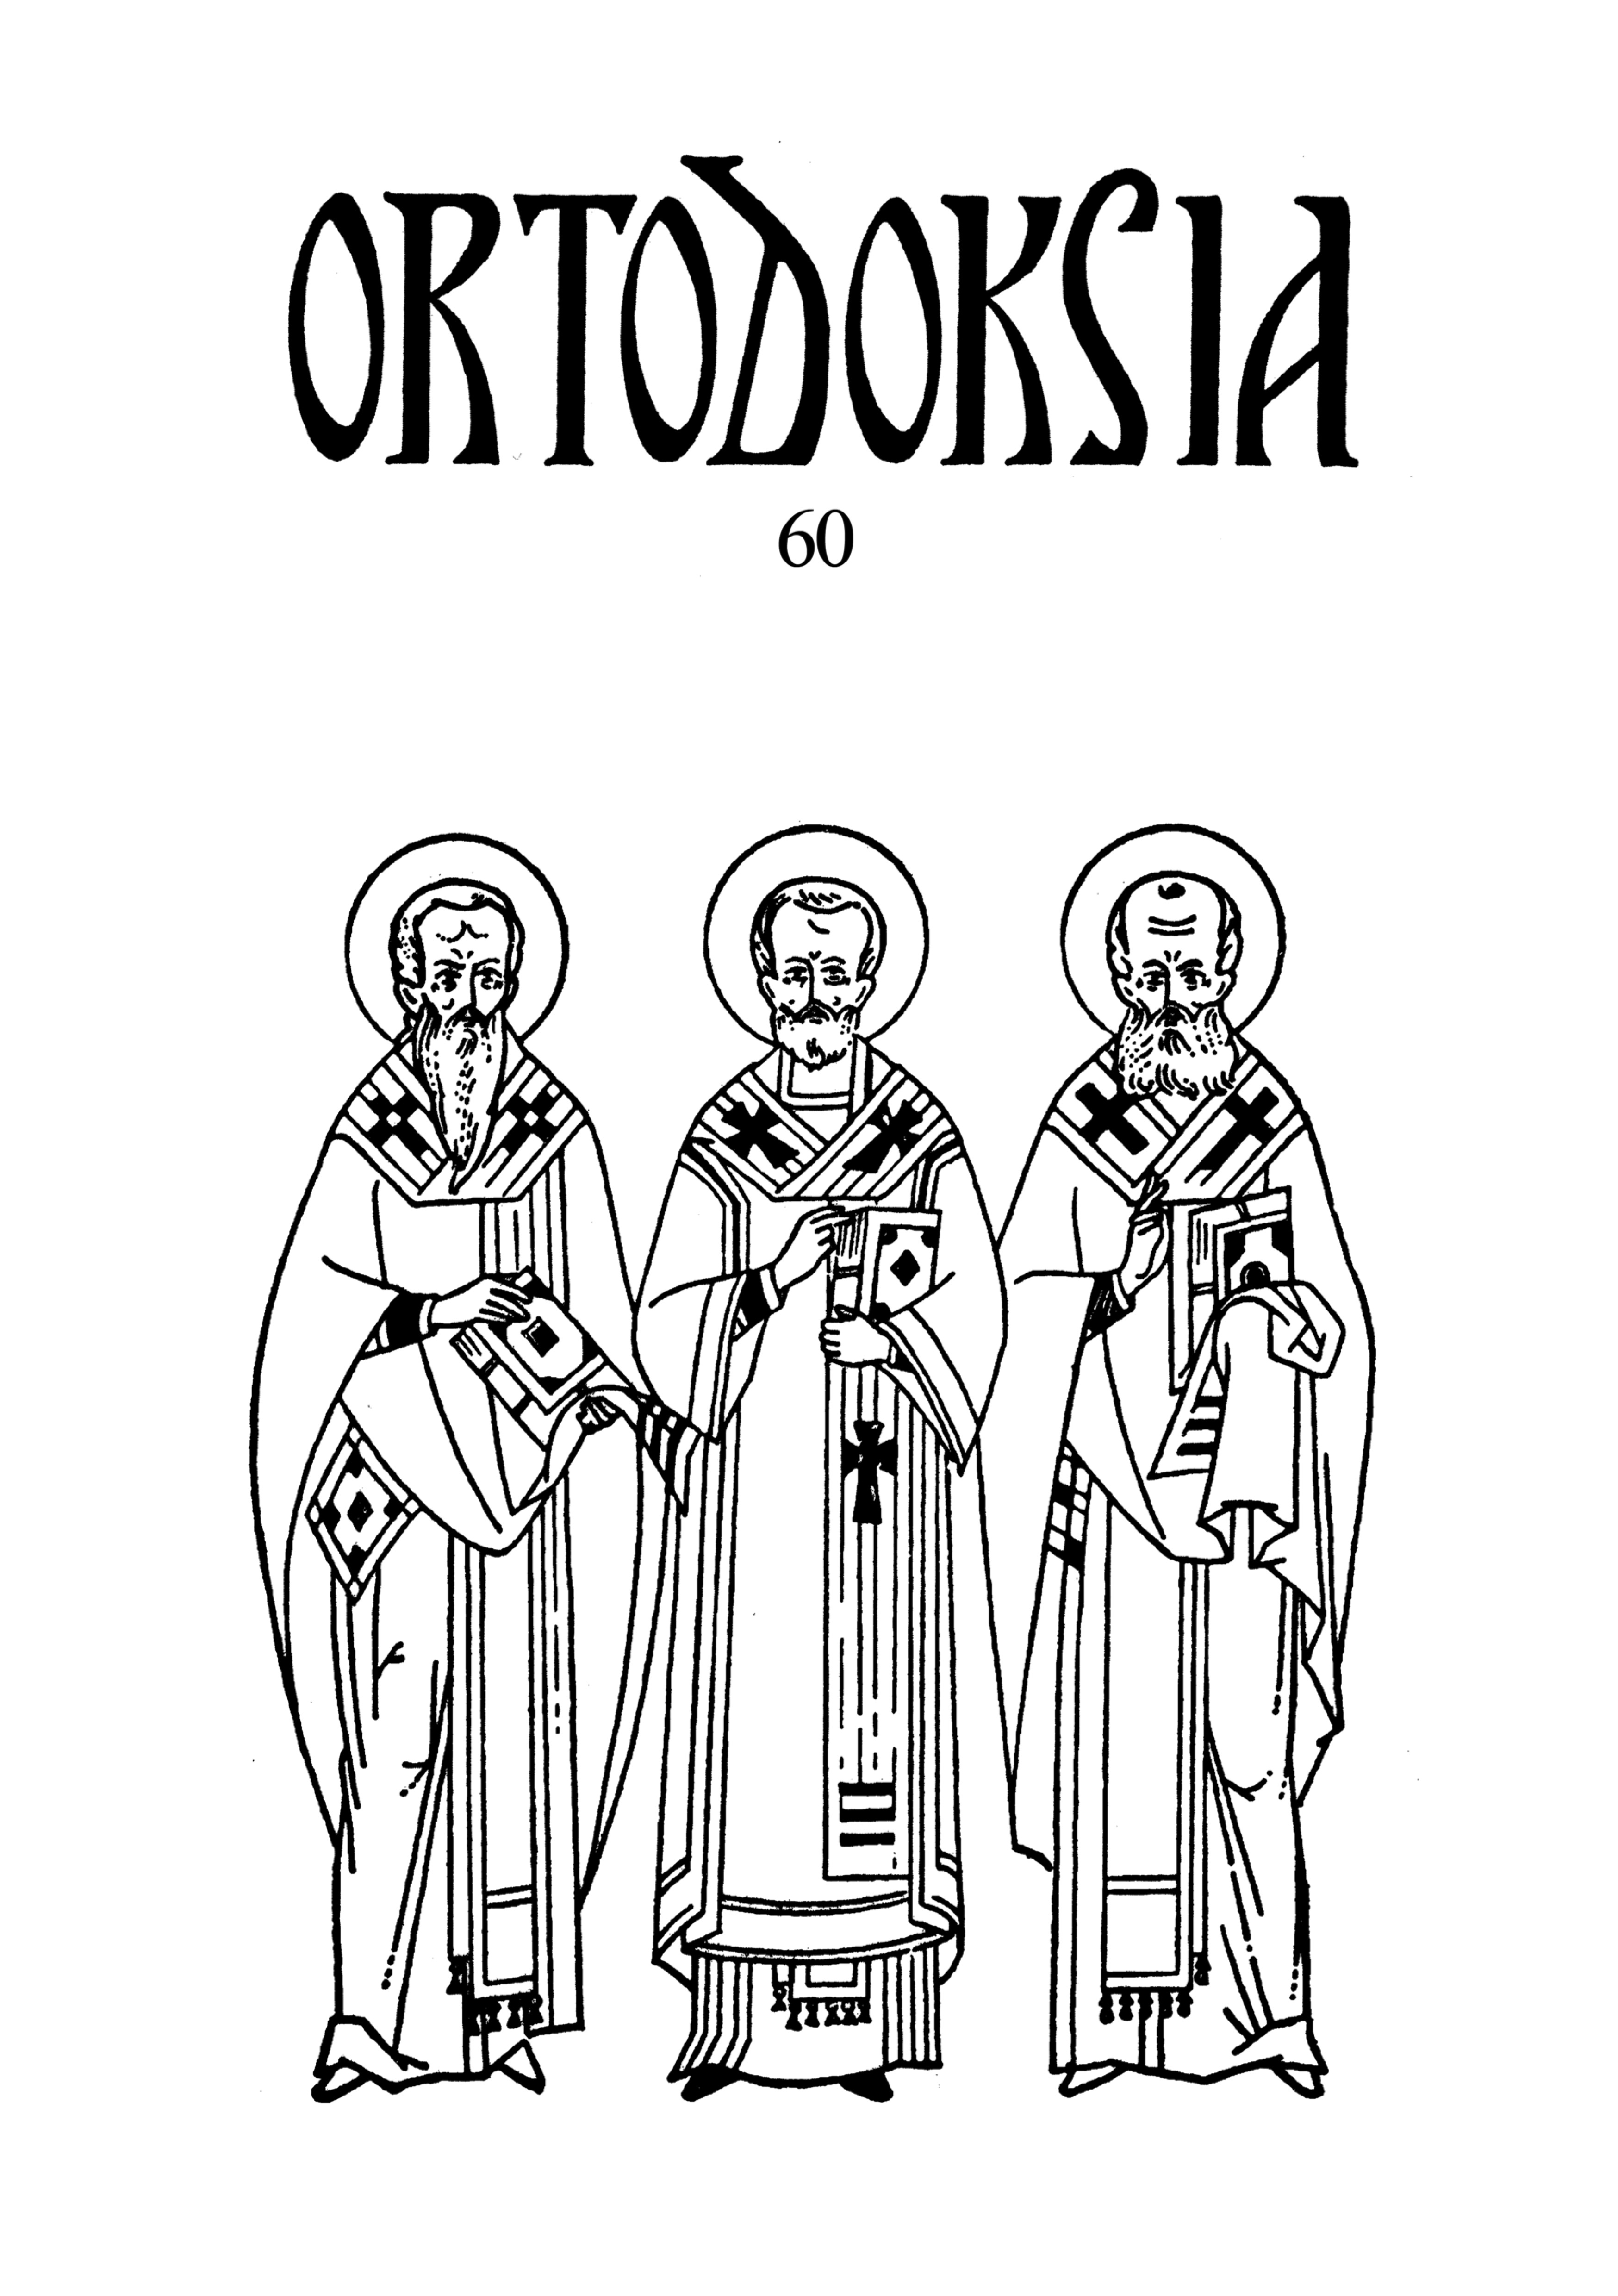 Ortodoksia-julkaisun kansikuva, jossa kuvattuina kolme kirkon esipaimenta.